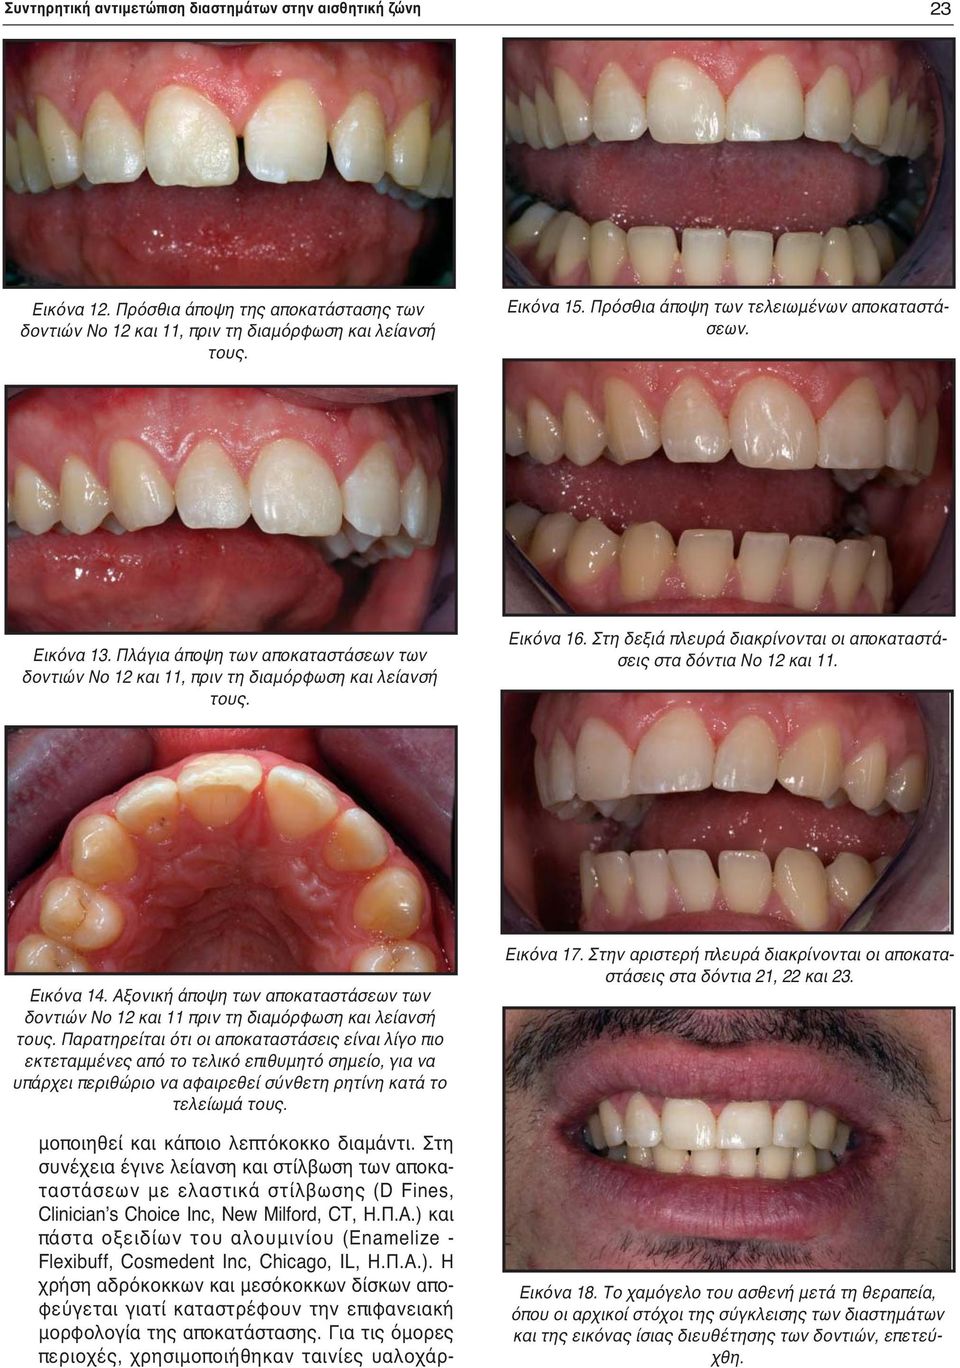 Στη δεξιά πλευρά διακρίνονται οι αποκαταστάσεις στα δόντια Νο 12 και 11. Εικόνα 14. Αξονική άποψη των αποκαταστάσεων των δοντιών Νο 12 και 11 πριν τη διαμόρφωση και λείανσή τους.